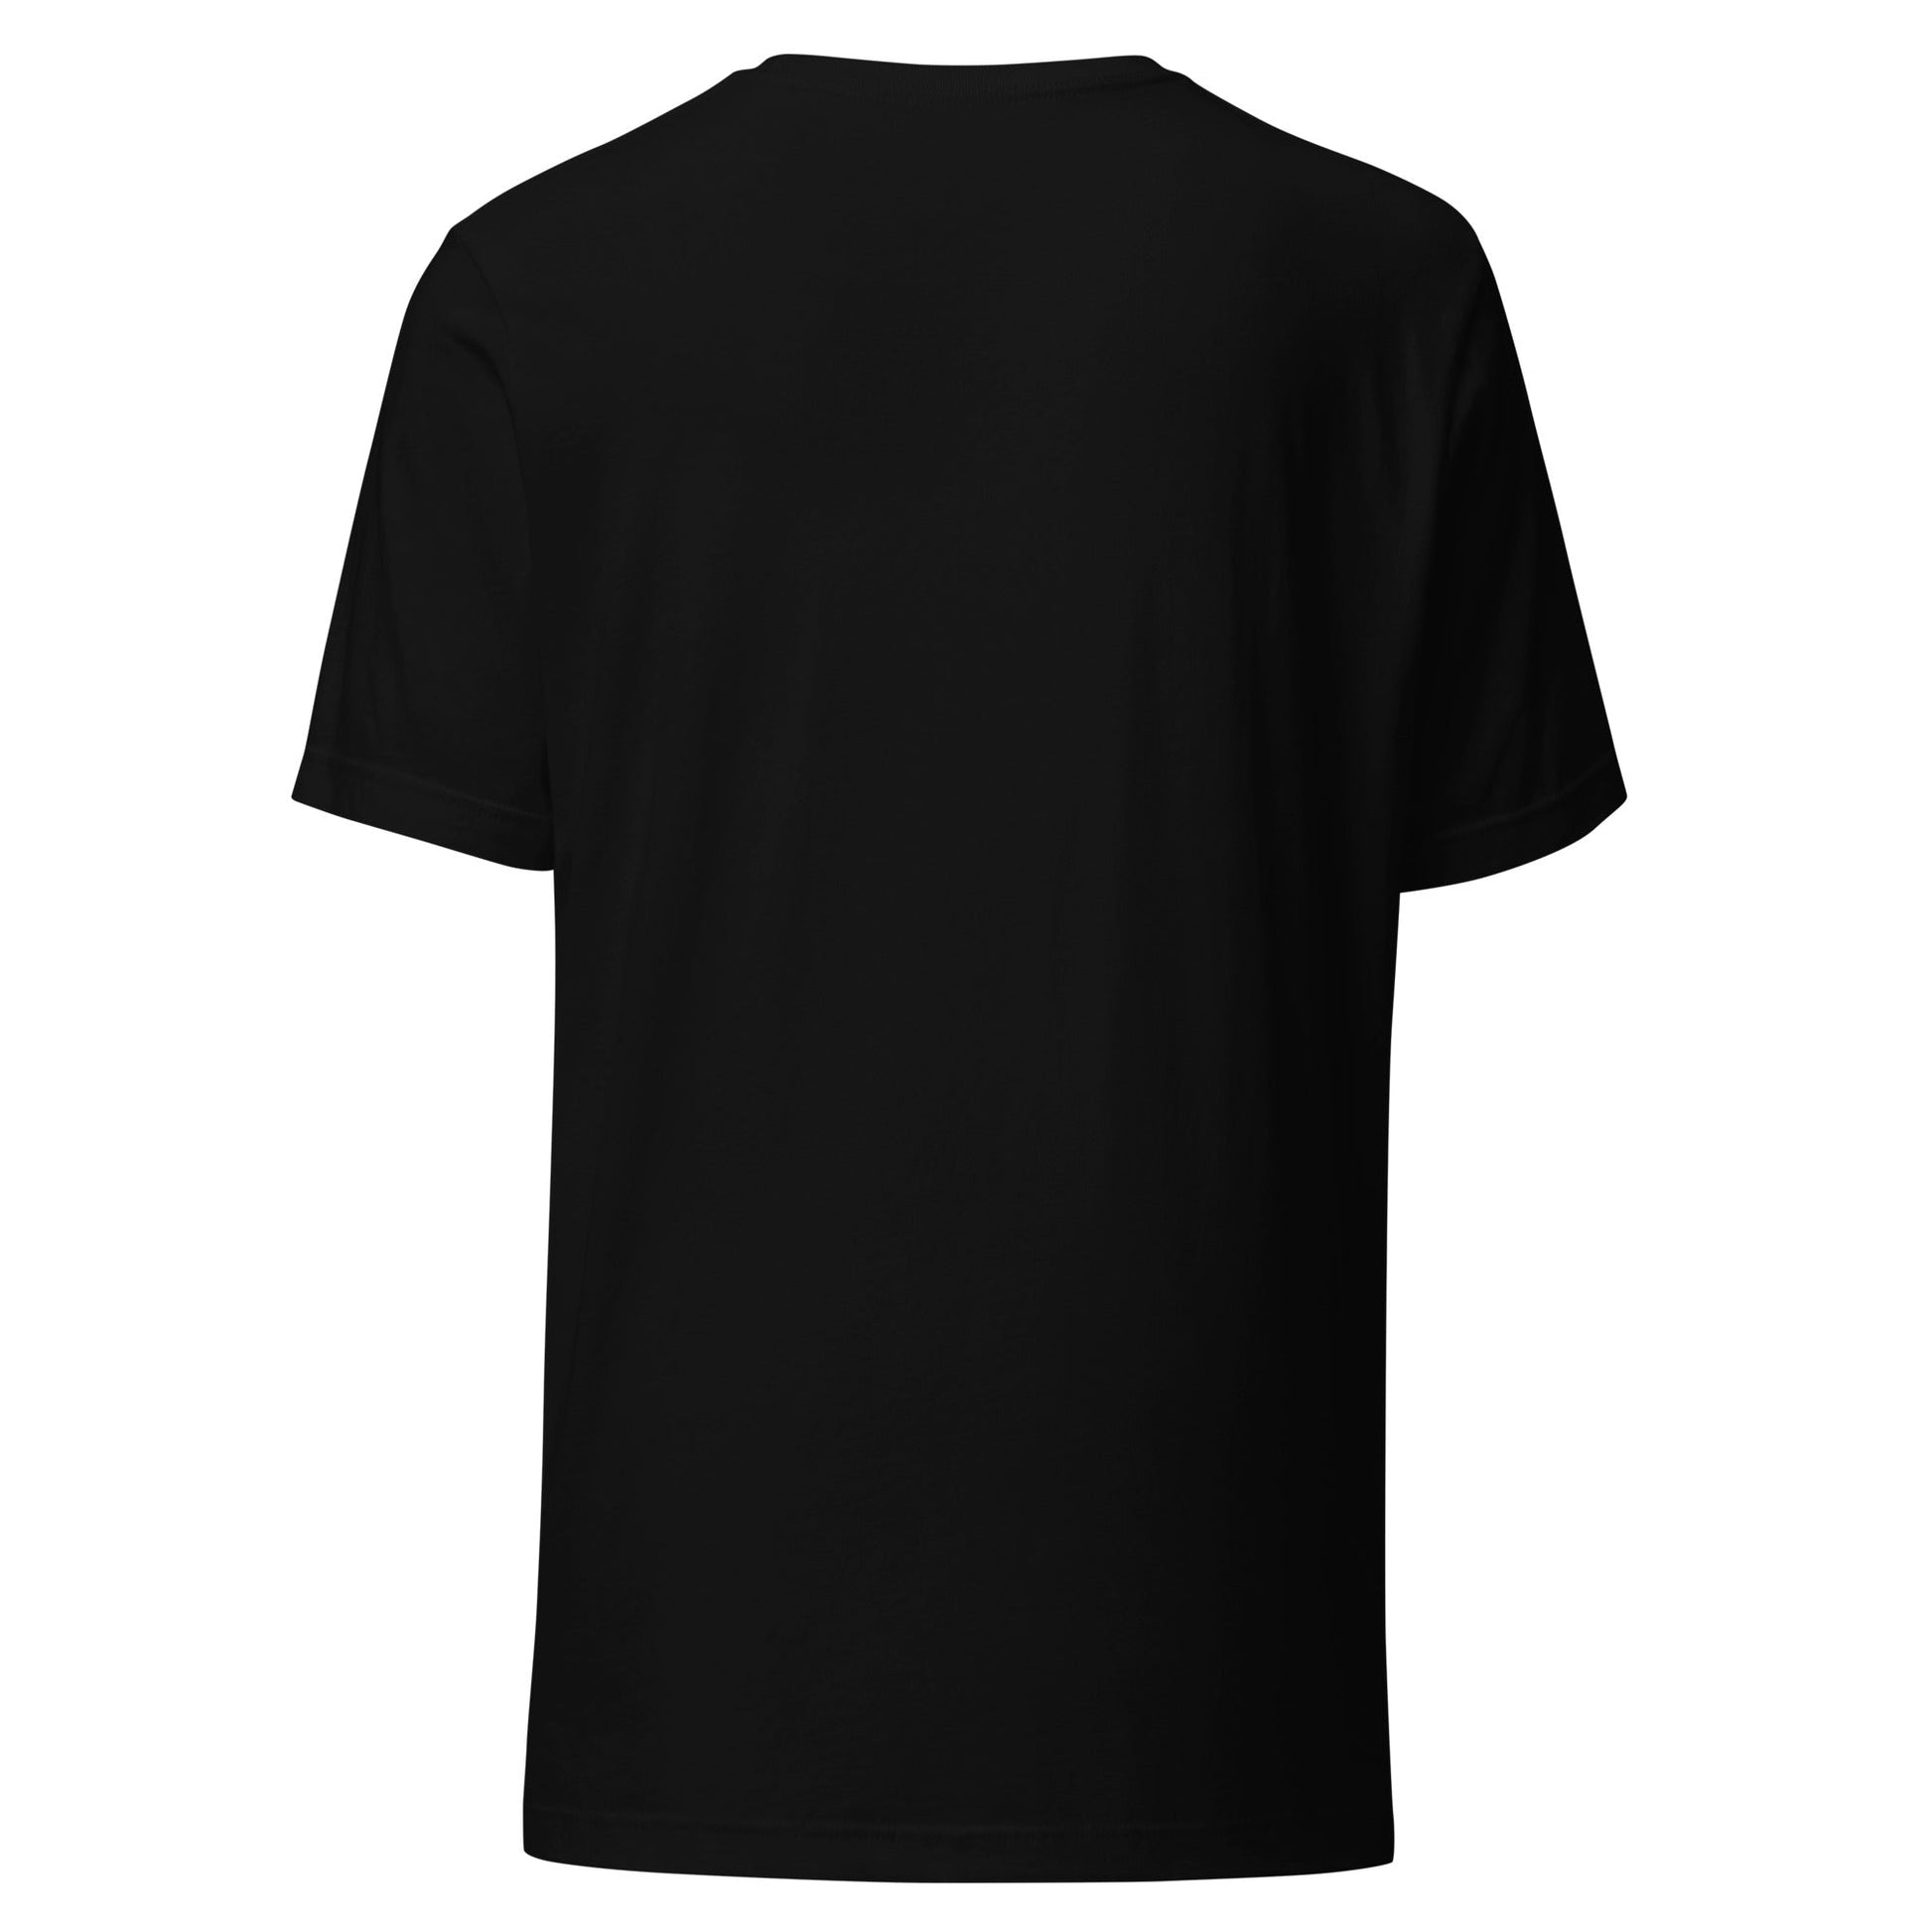 Camiseta Negra de Algodón - Elegancia y calidad en nuestra insignia. Descubre la perfección del algodón premium importado. envíos a Guatemala